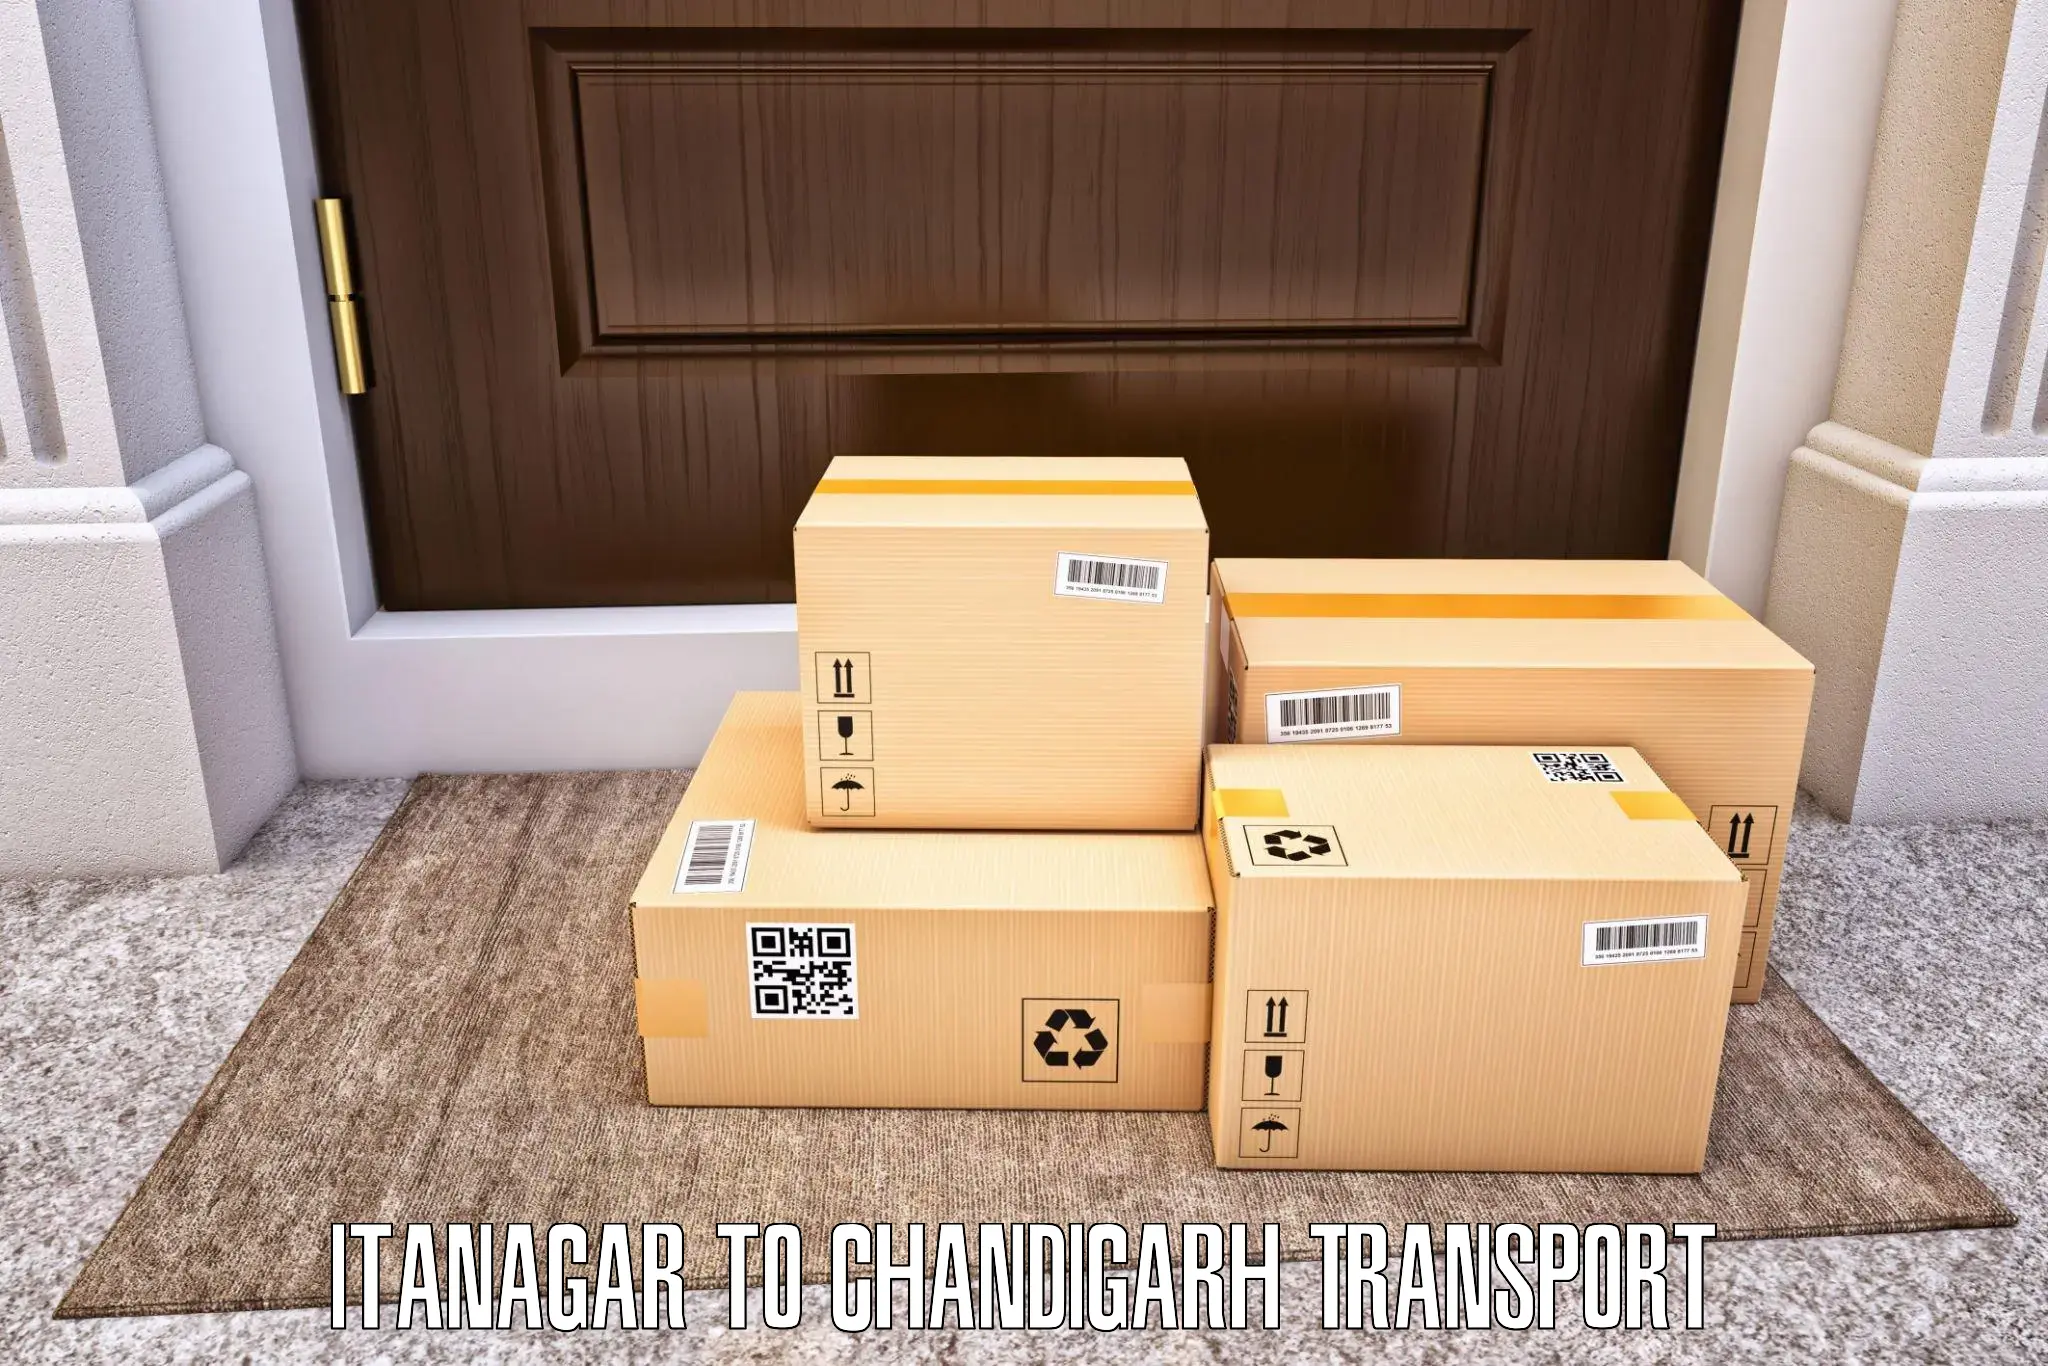 Furniture transport service Itanagar to Chandigarh